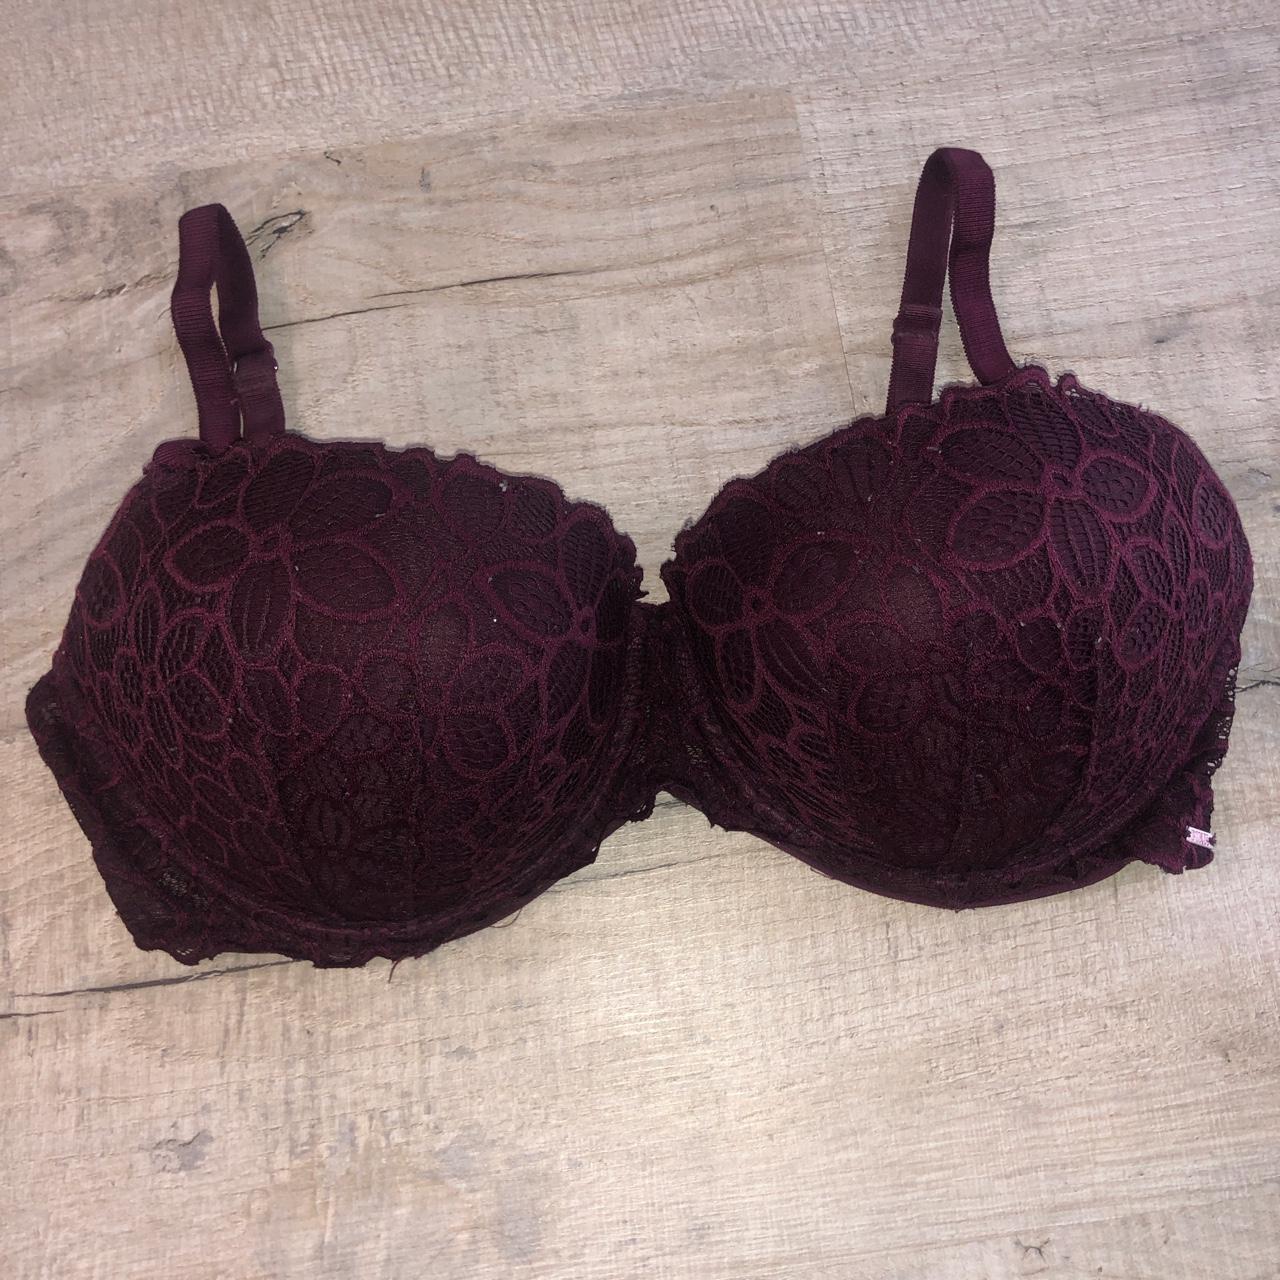 Victoria Secret Burgundy Bra SIZE 36DD #bras - Depop